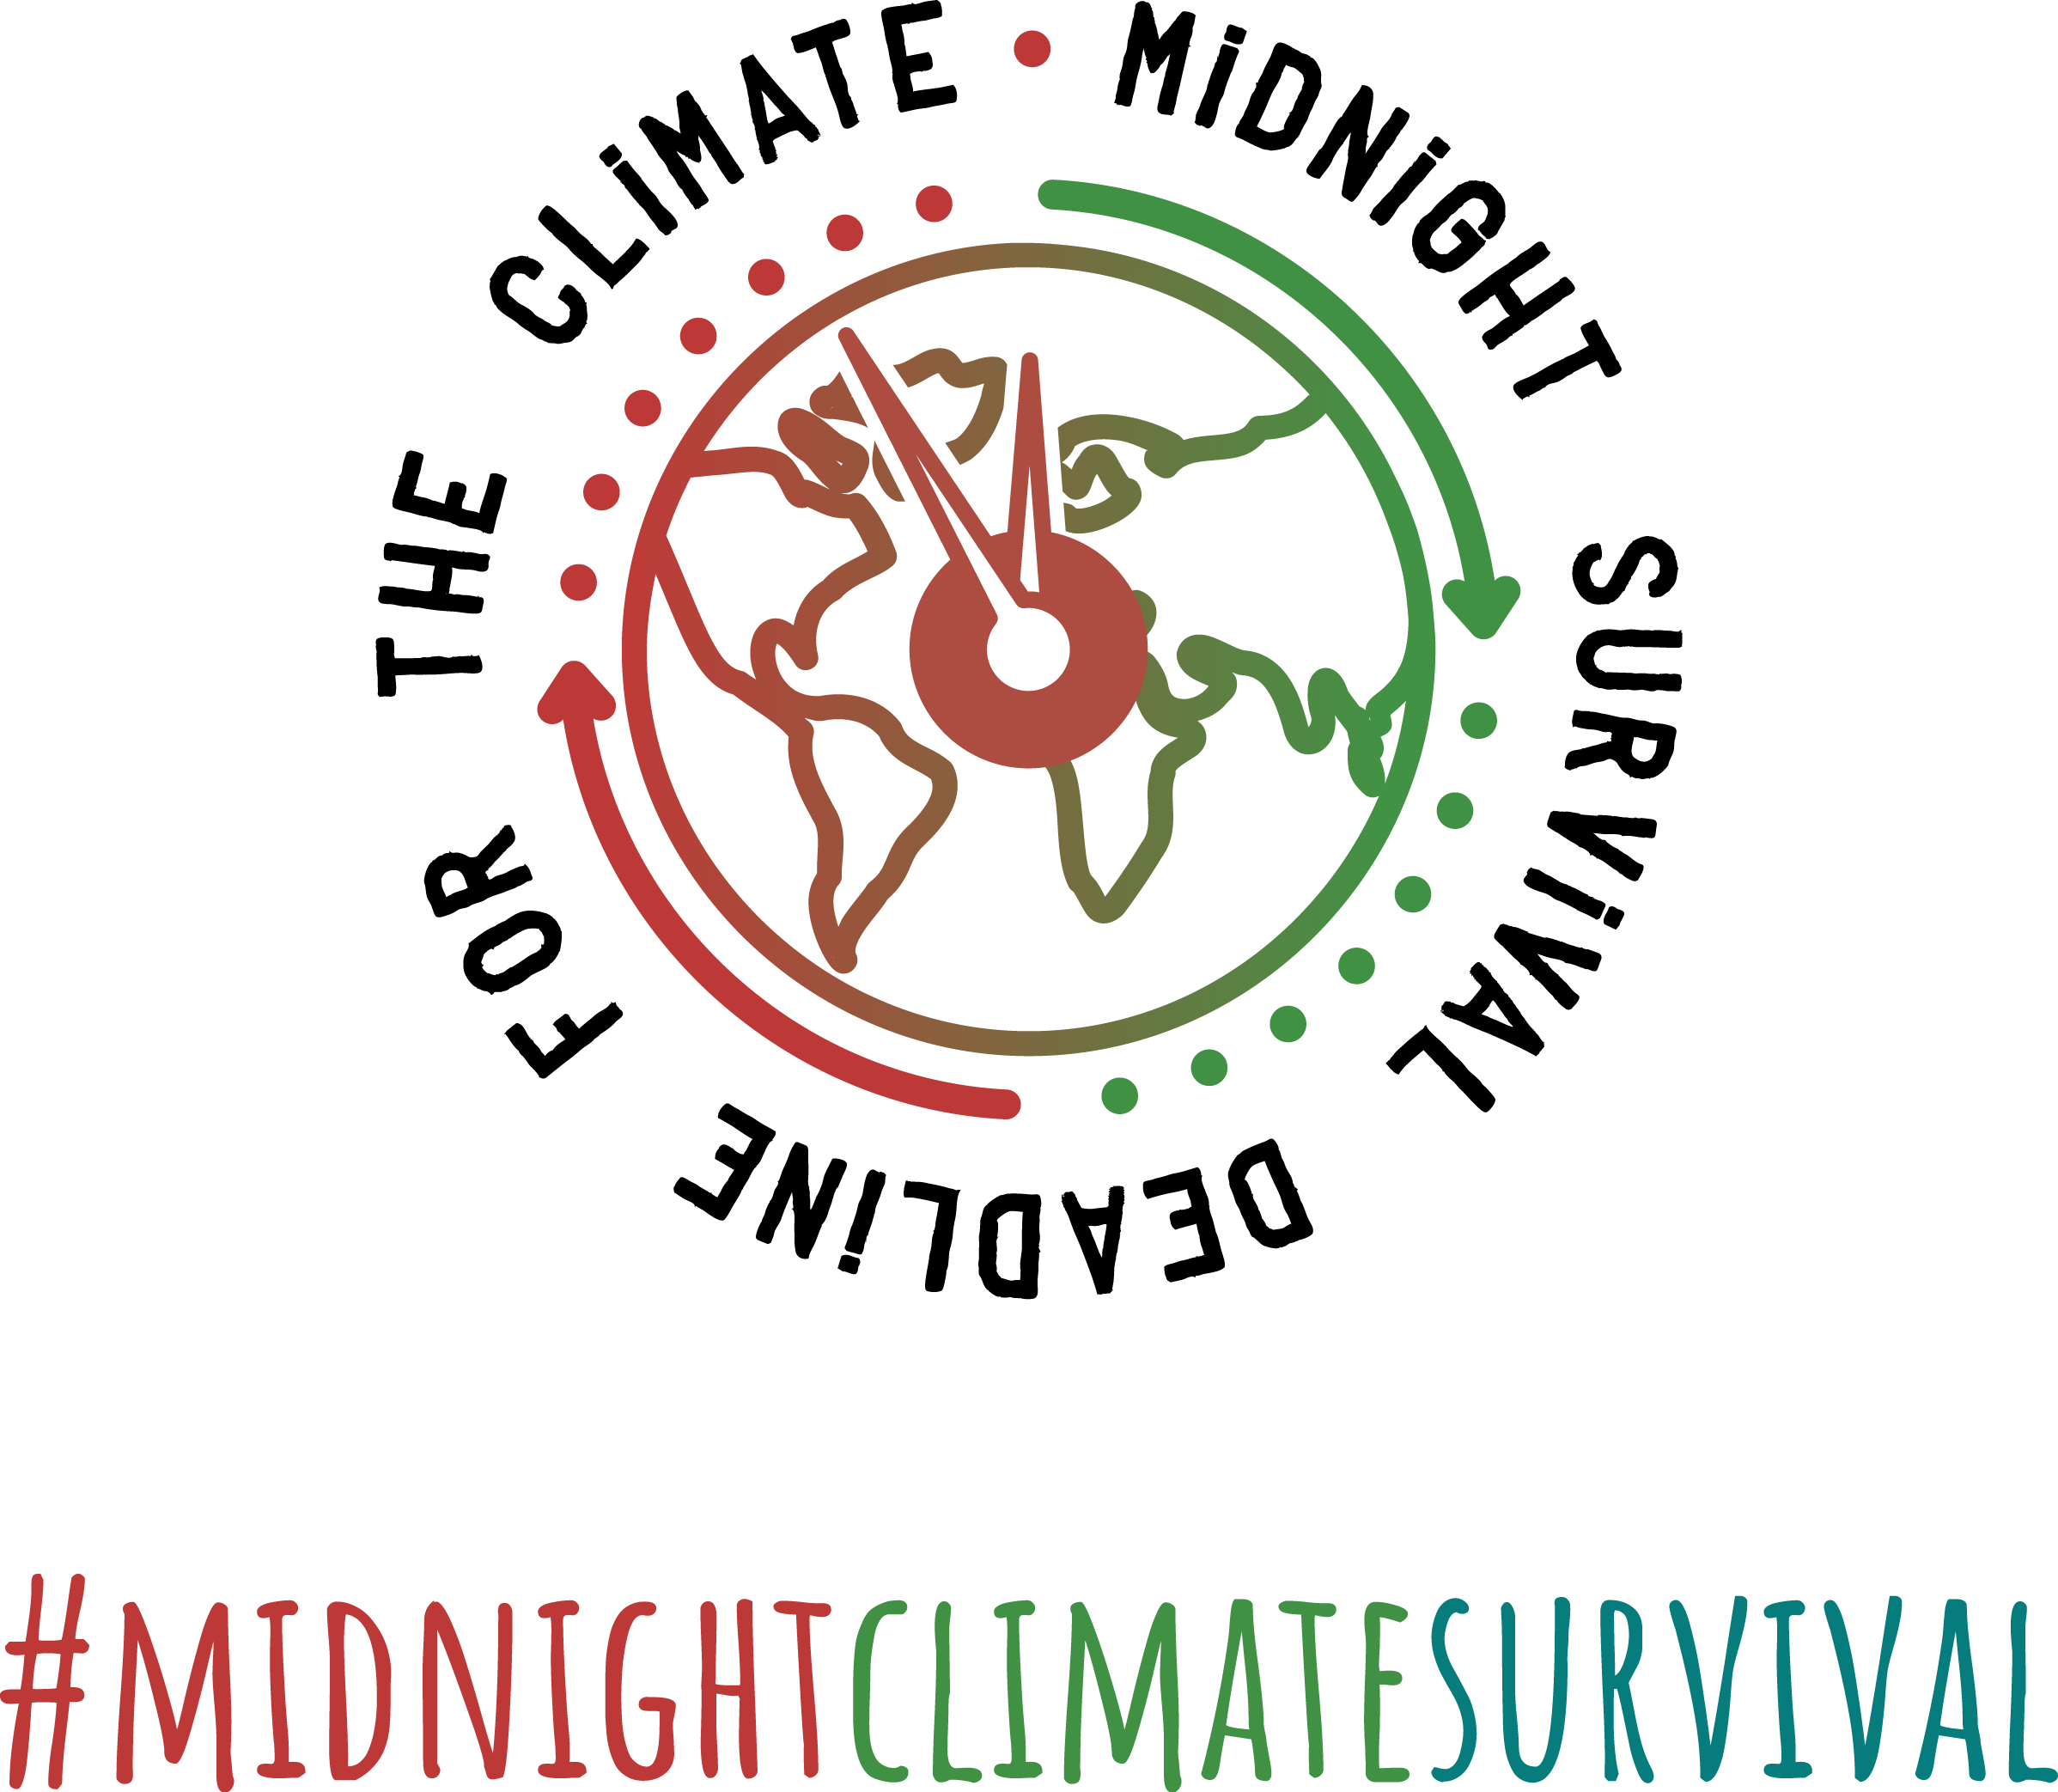 Midnight Climate Survival Cvf